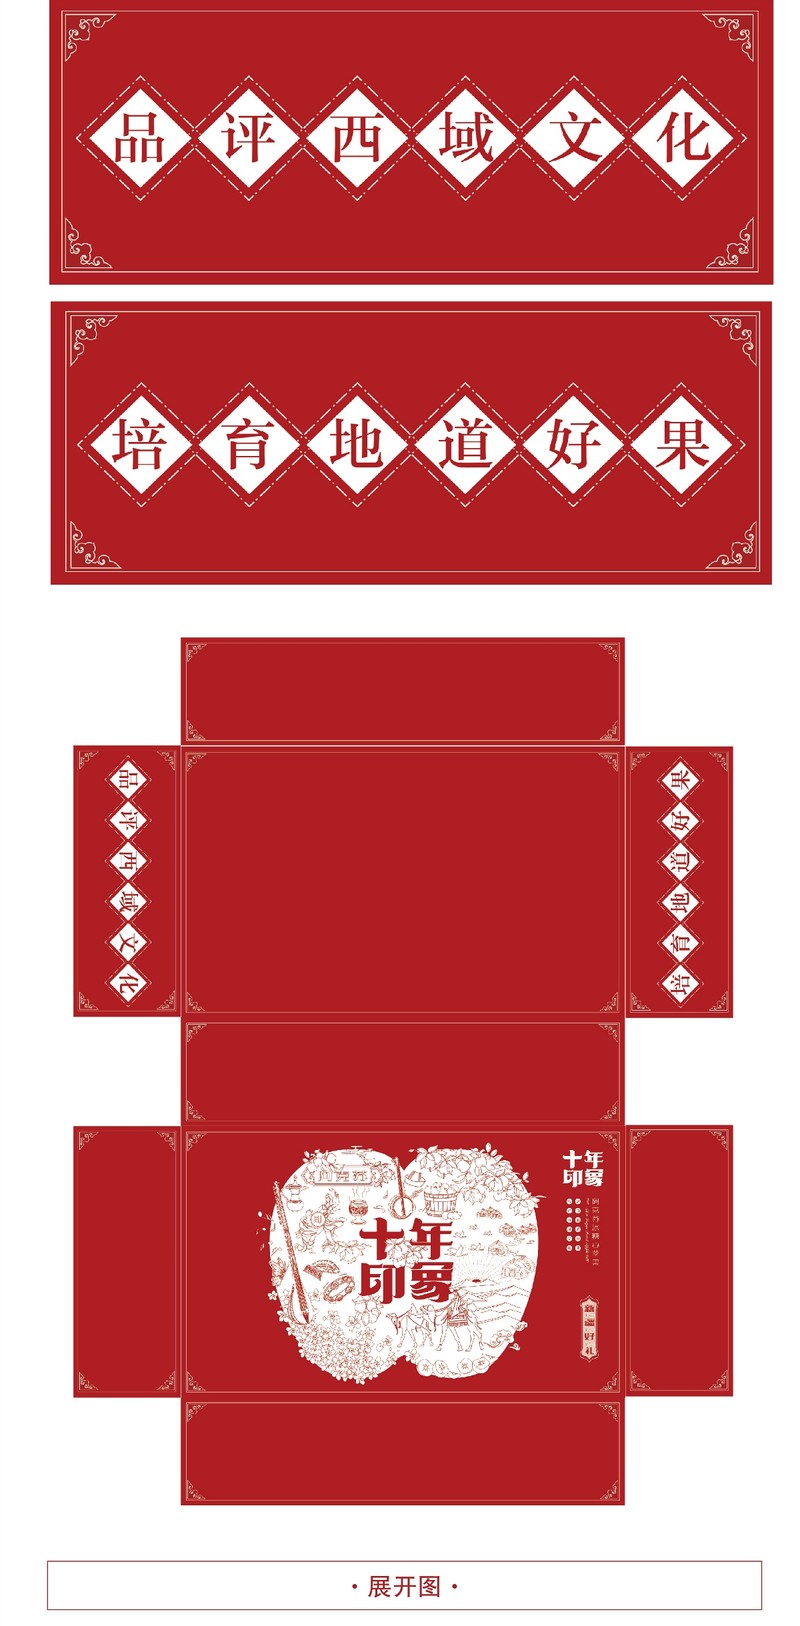 新疆苹果新年礼盒包装与策划